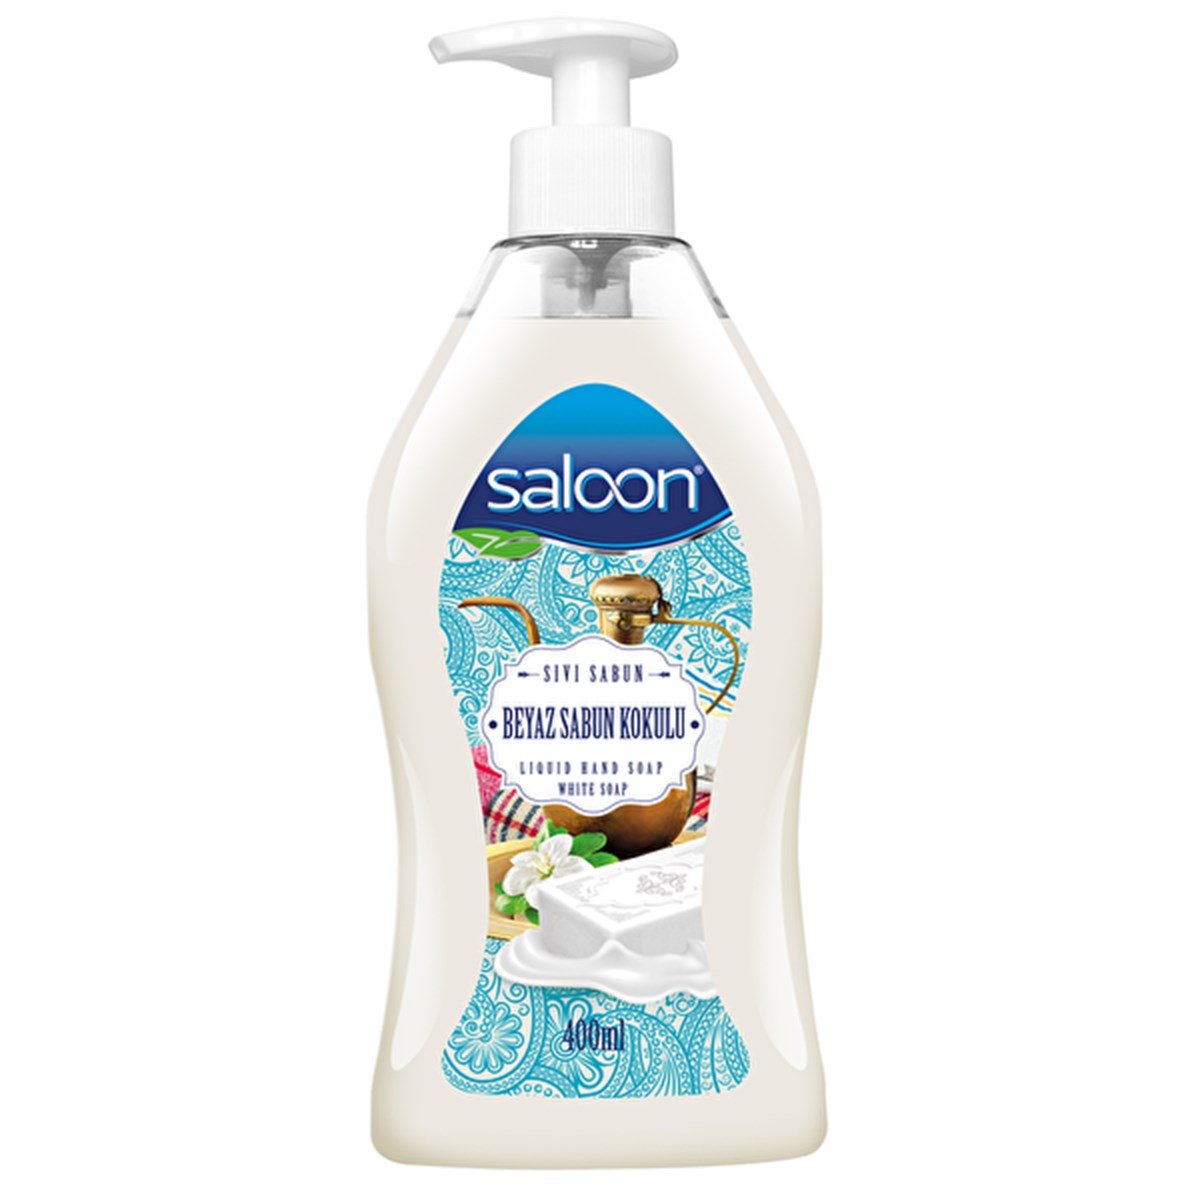 Saloon Beyaz Sabun Kokulu Sıvı Sabun 400 ML